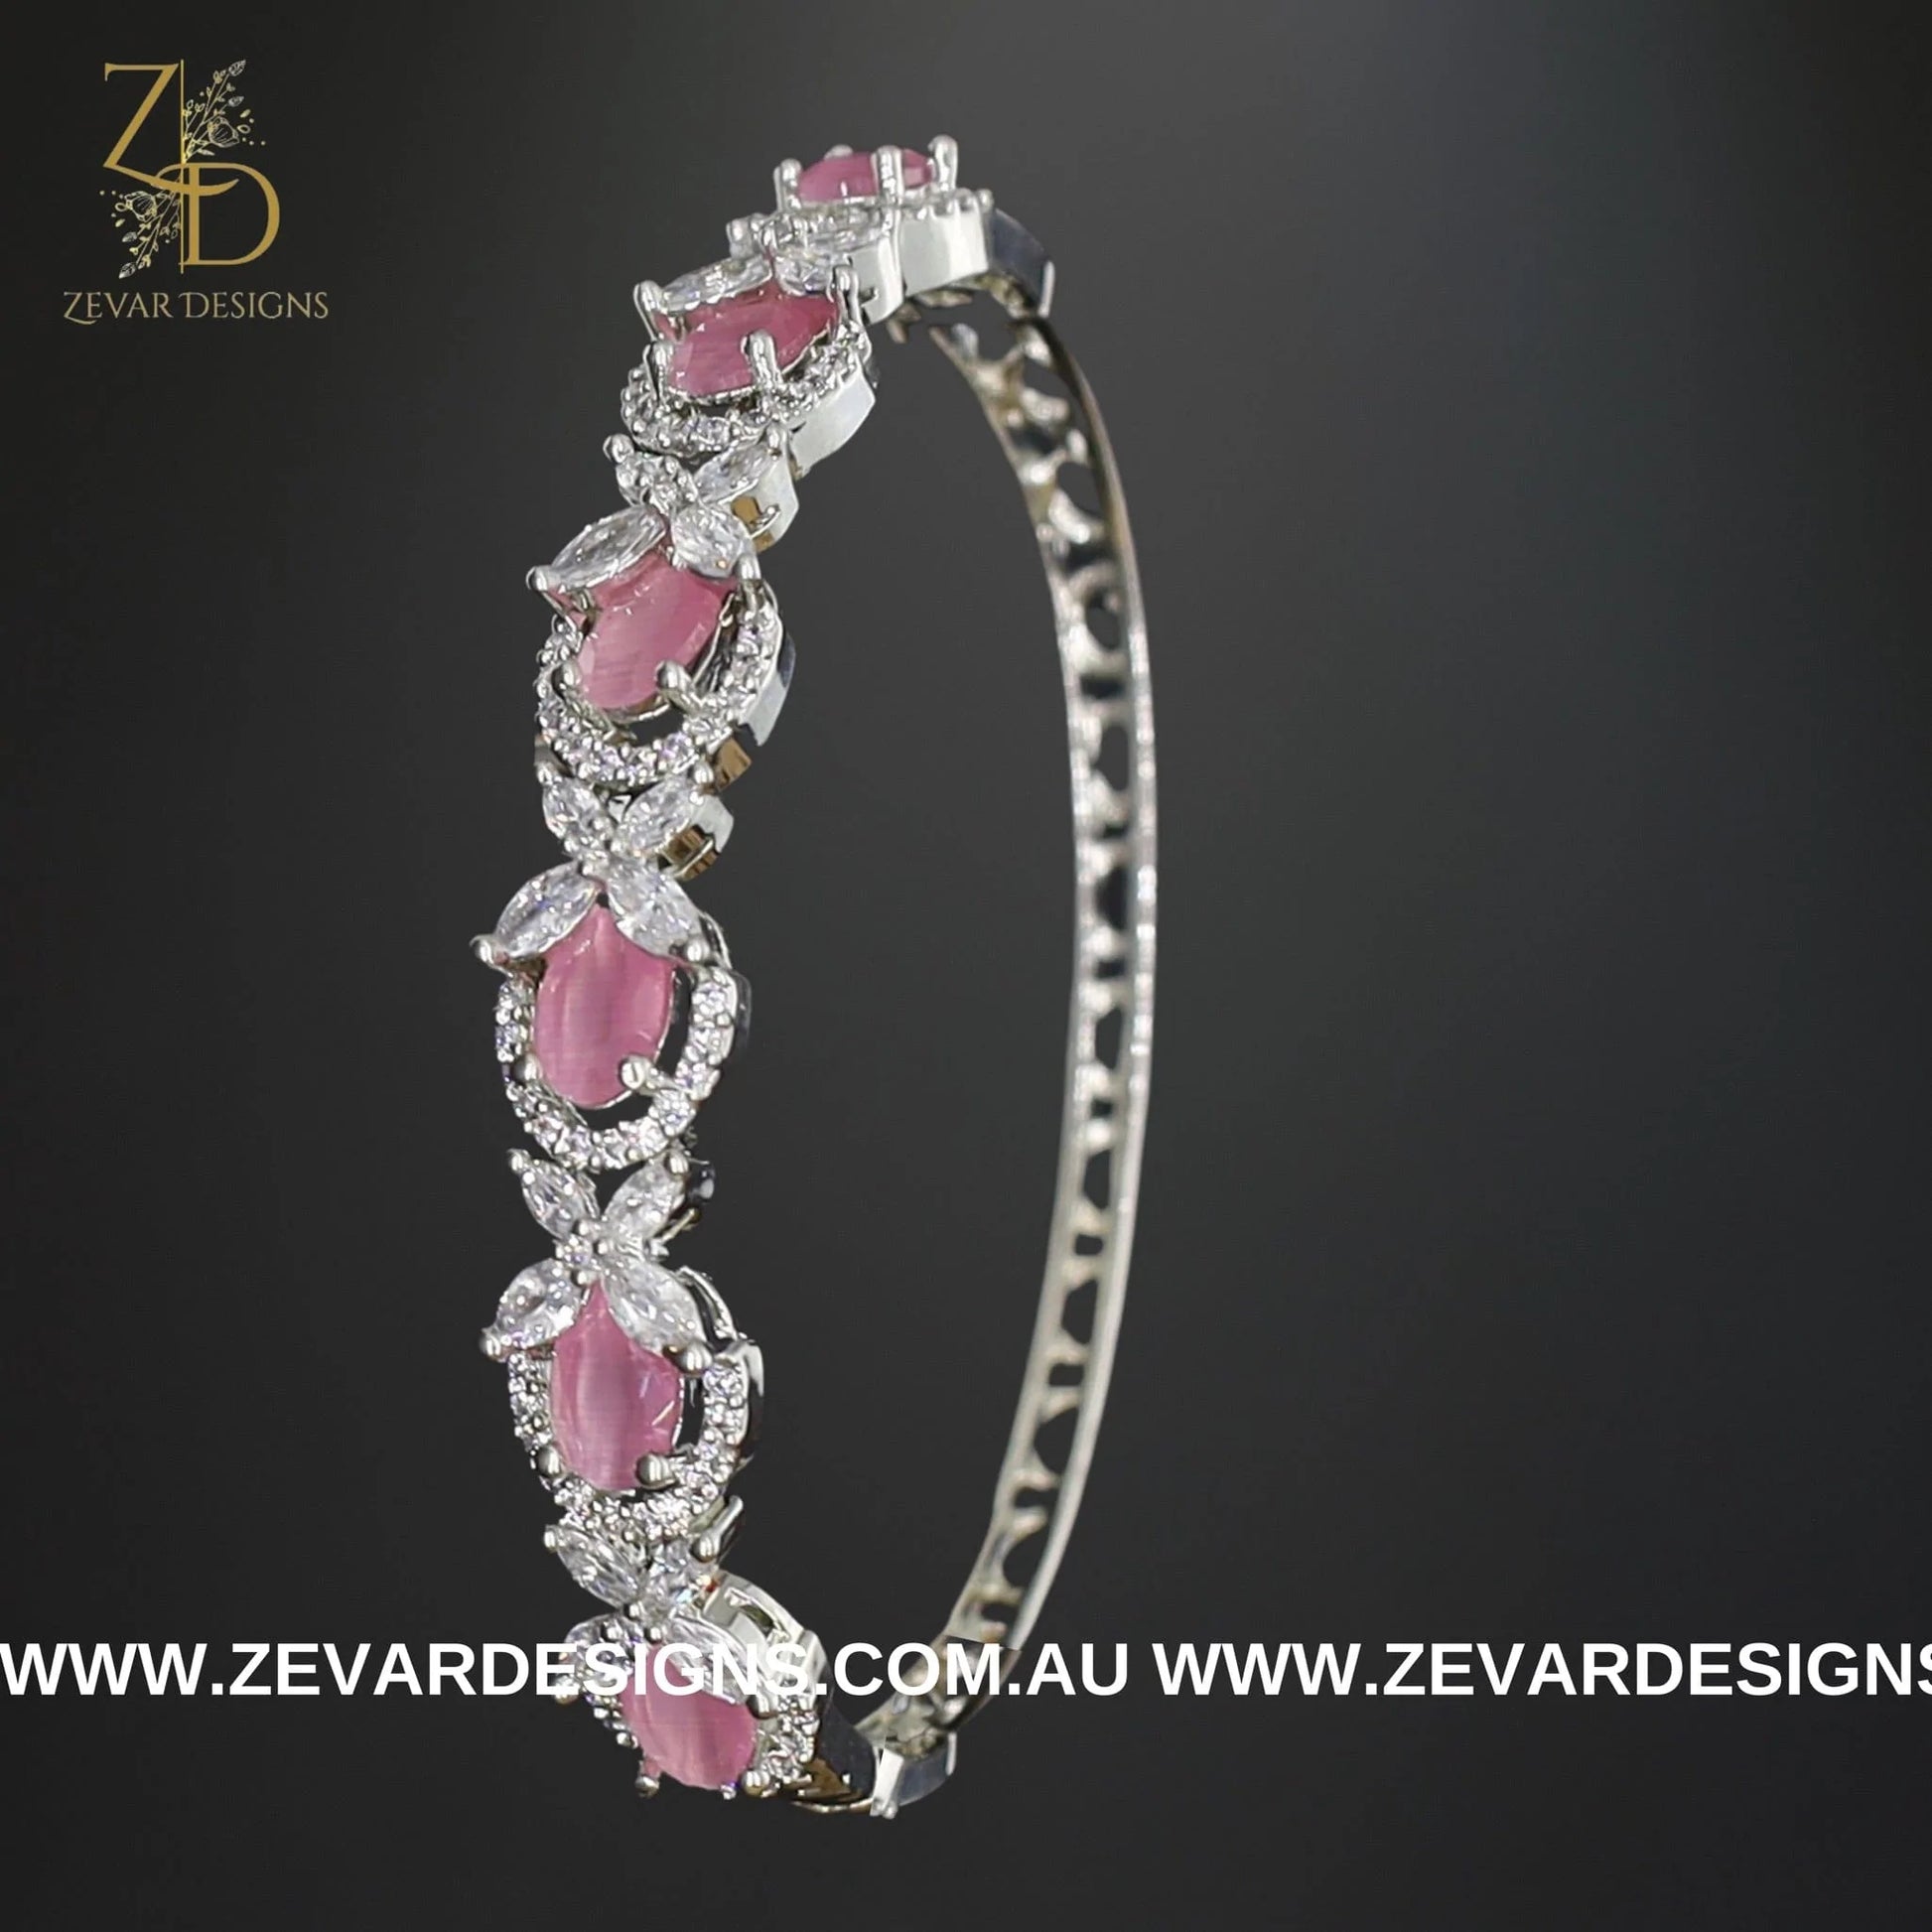 Zevar Designs Bangles & Bracelets - AD AD Bracelet in White Rhodium and Pink